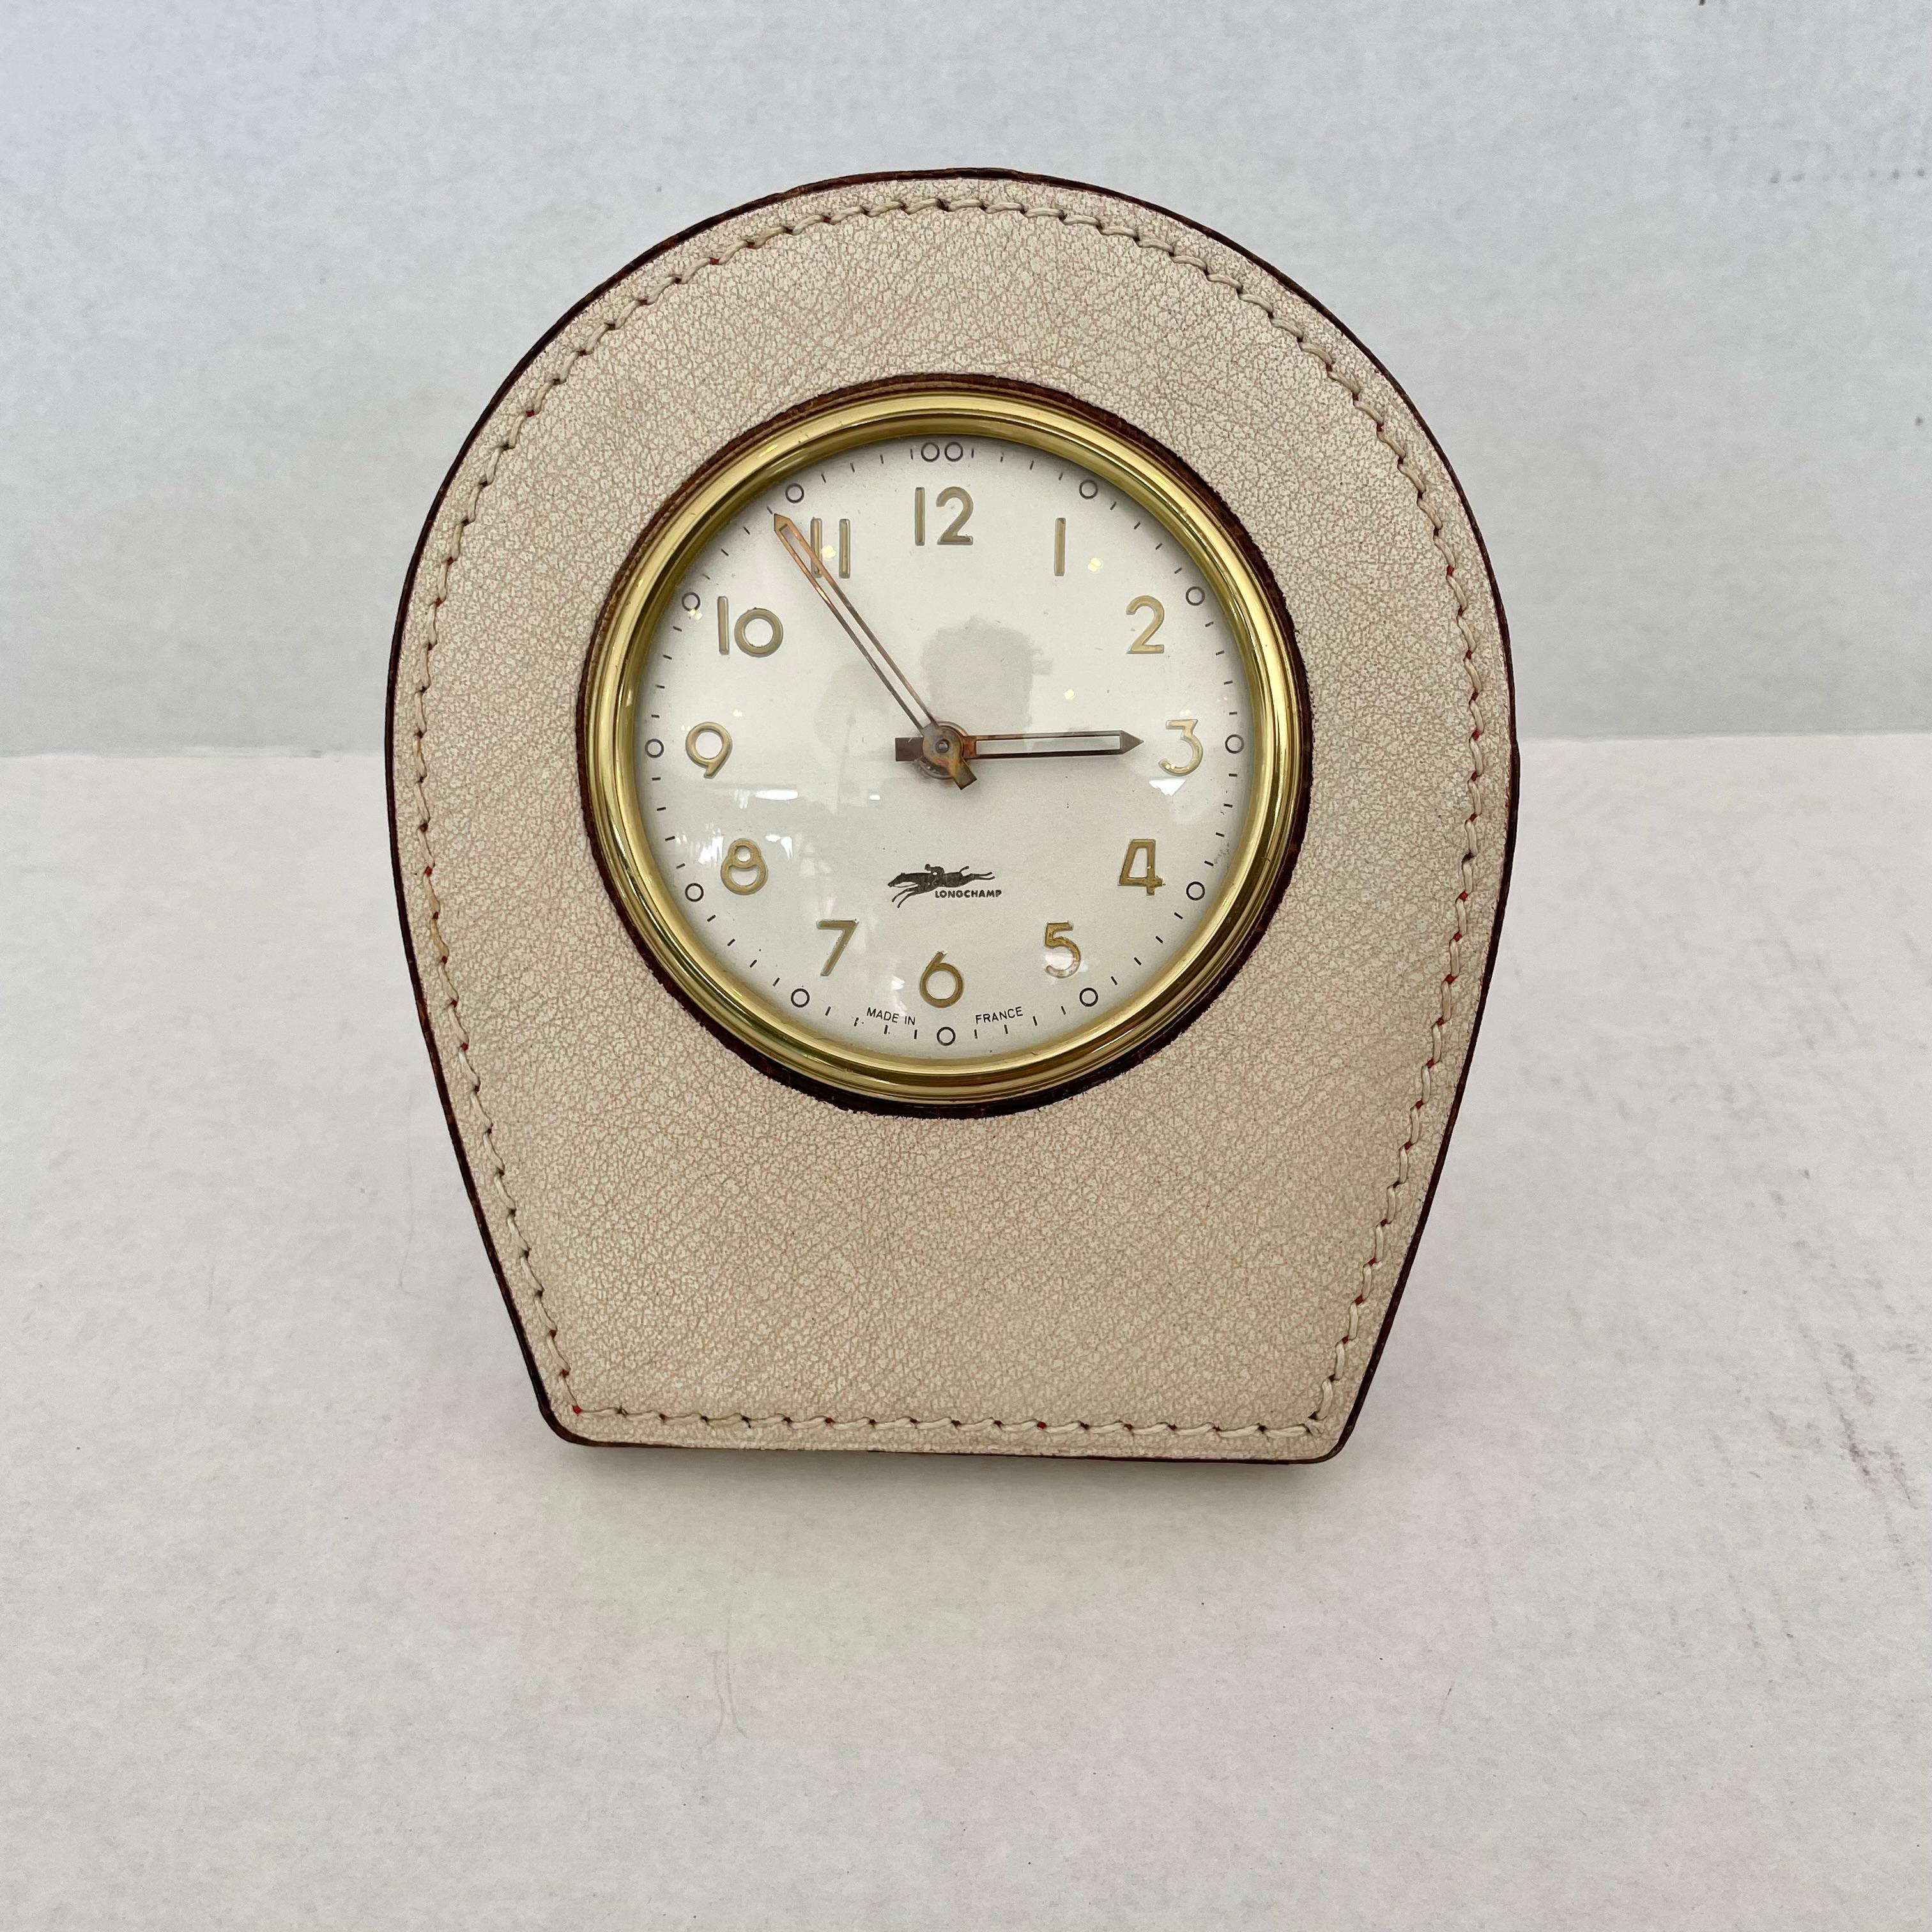 Hübsche Schreibtischuhr aus französischem Leder von Longchamp. Hält die Zeit gut ein. Die Uhr wird auf der Rückseite aufgezogen und hat einen freiliegenden Knopf zum Einstellen der Zeit. Ausgezeichnete Patina auf cremefarbenem Leder. Toller